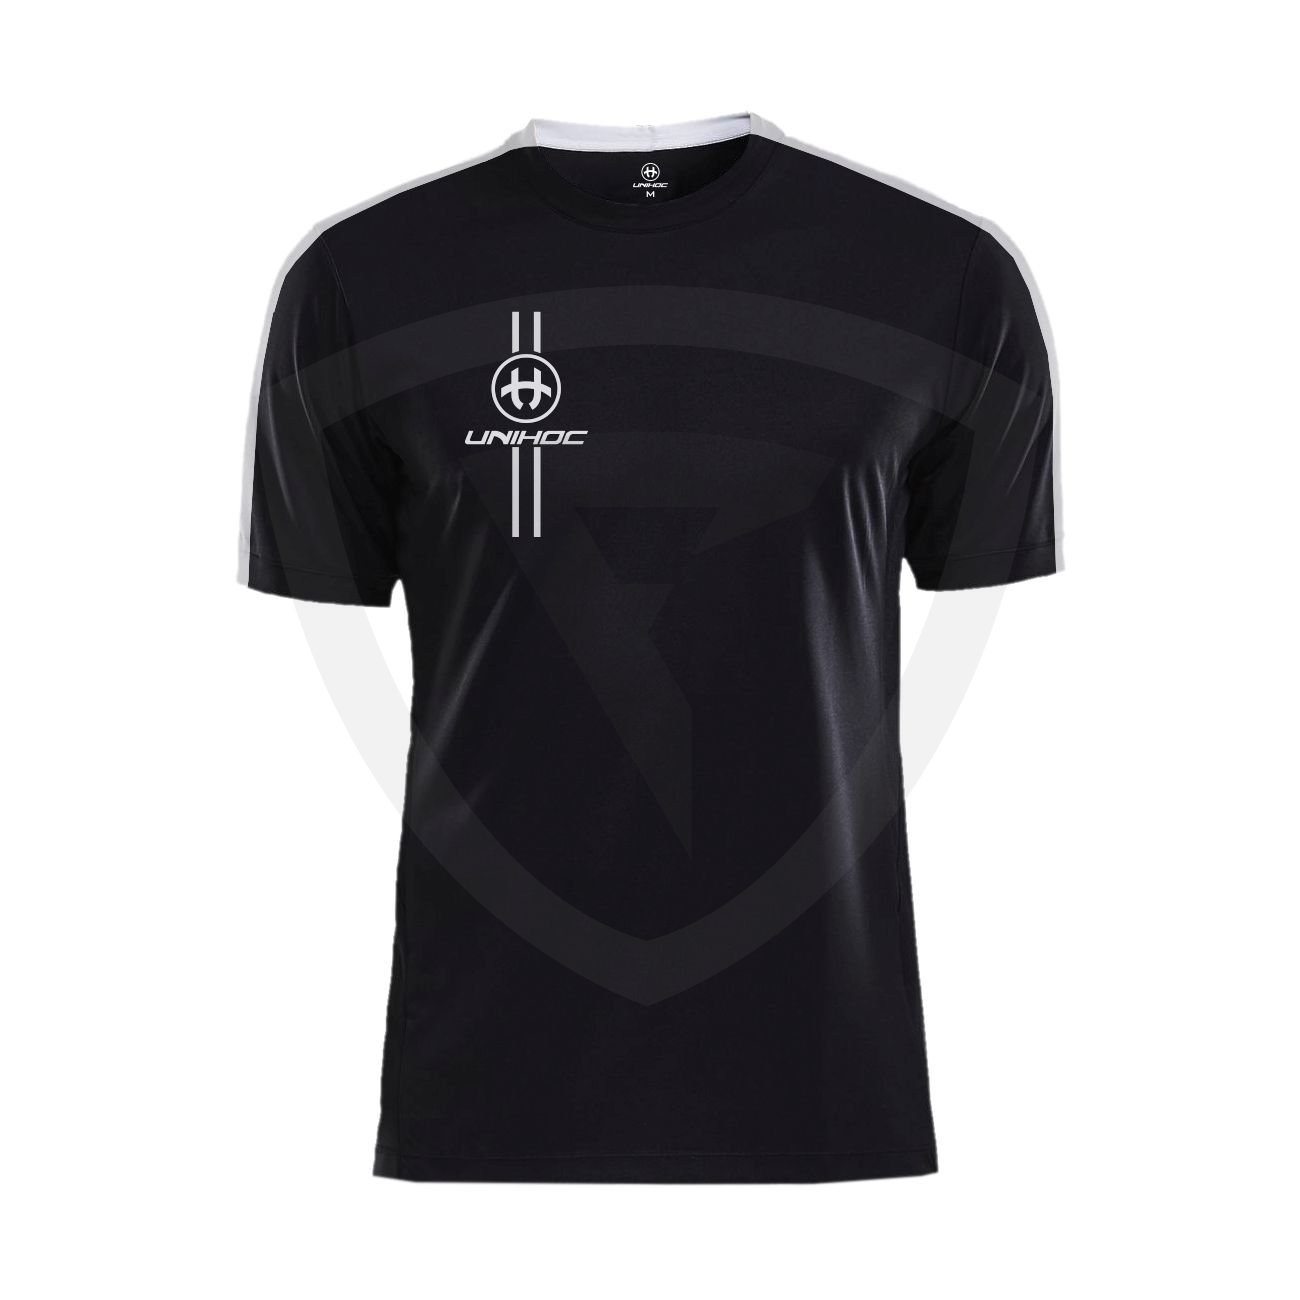 Unihoc Arrow T-shirt Black-White SR S černá-bílá